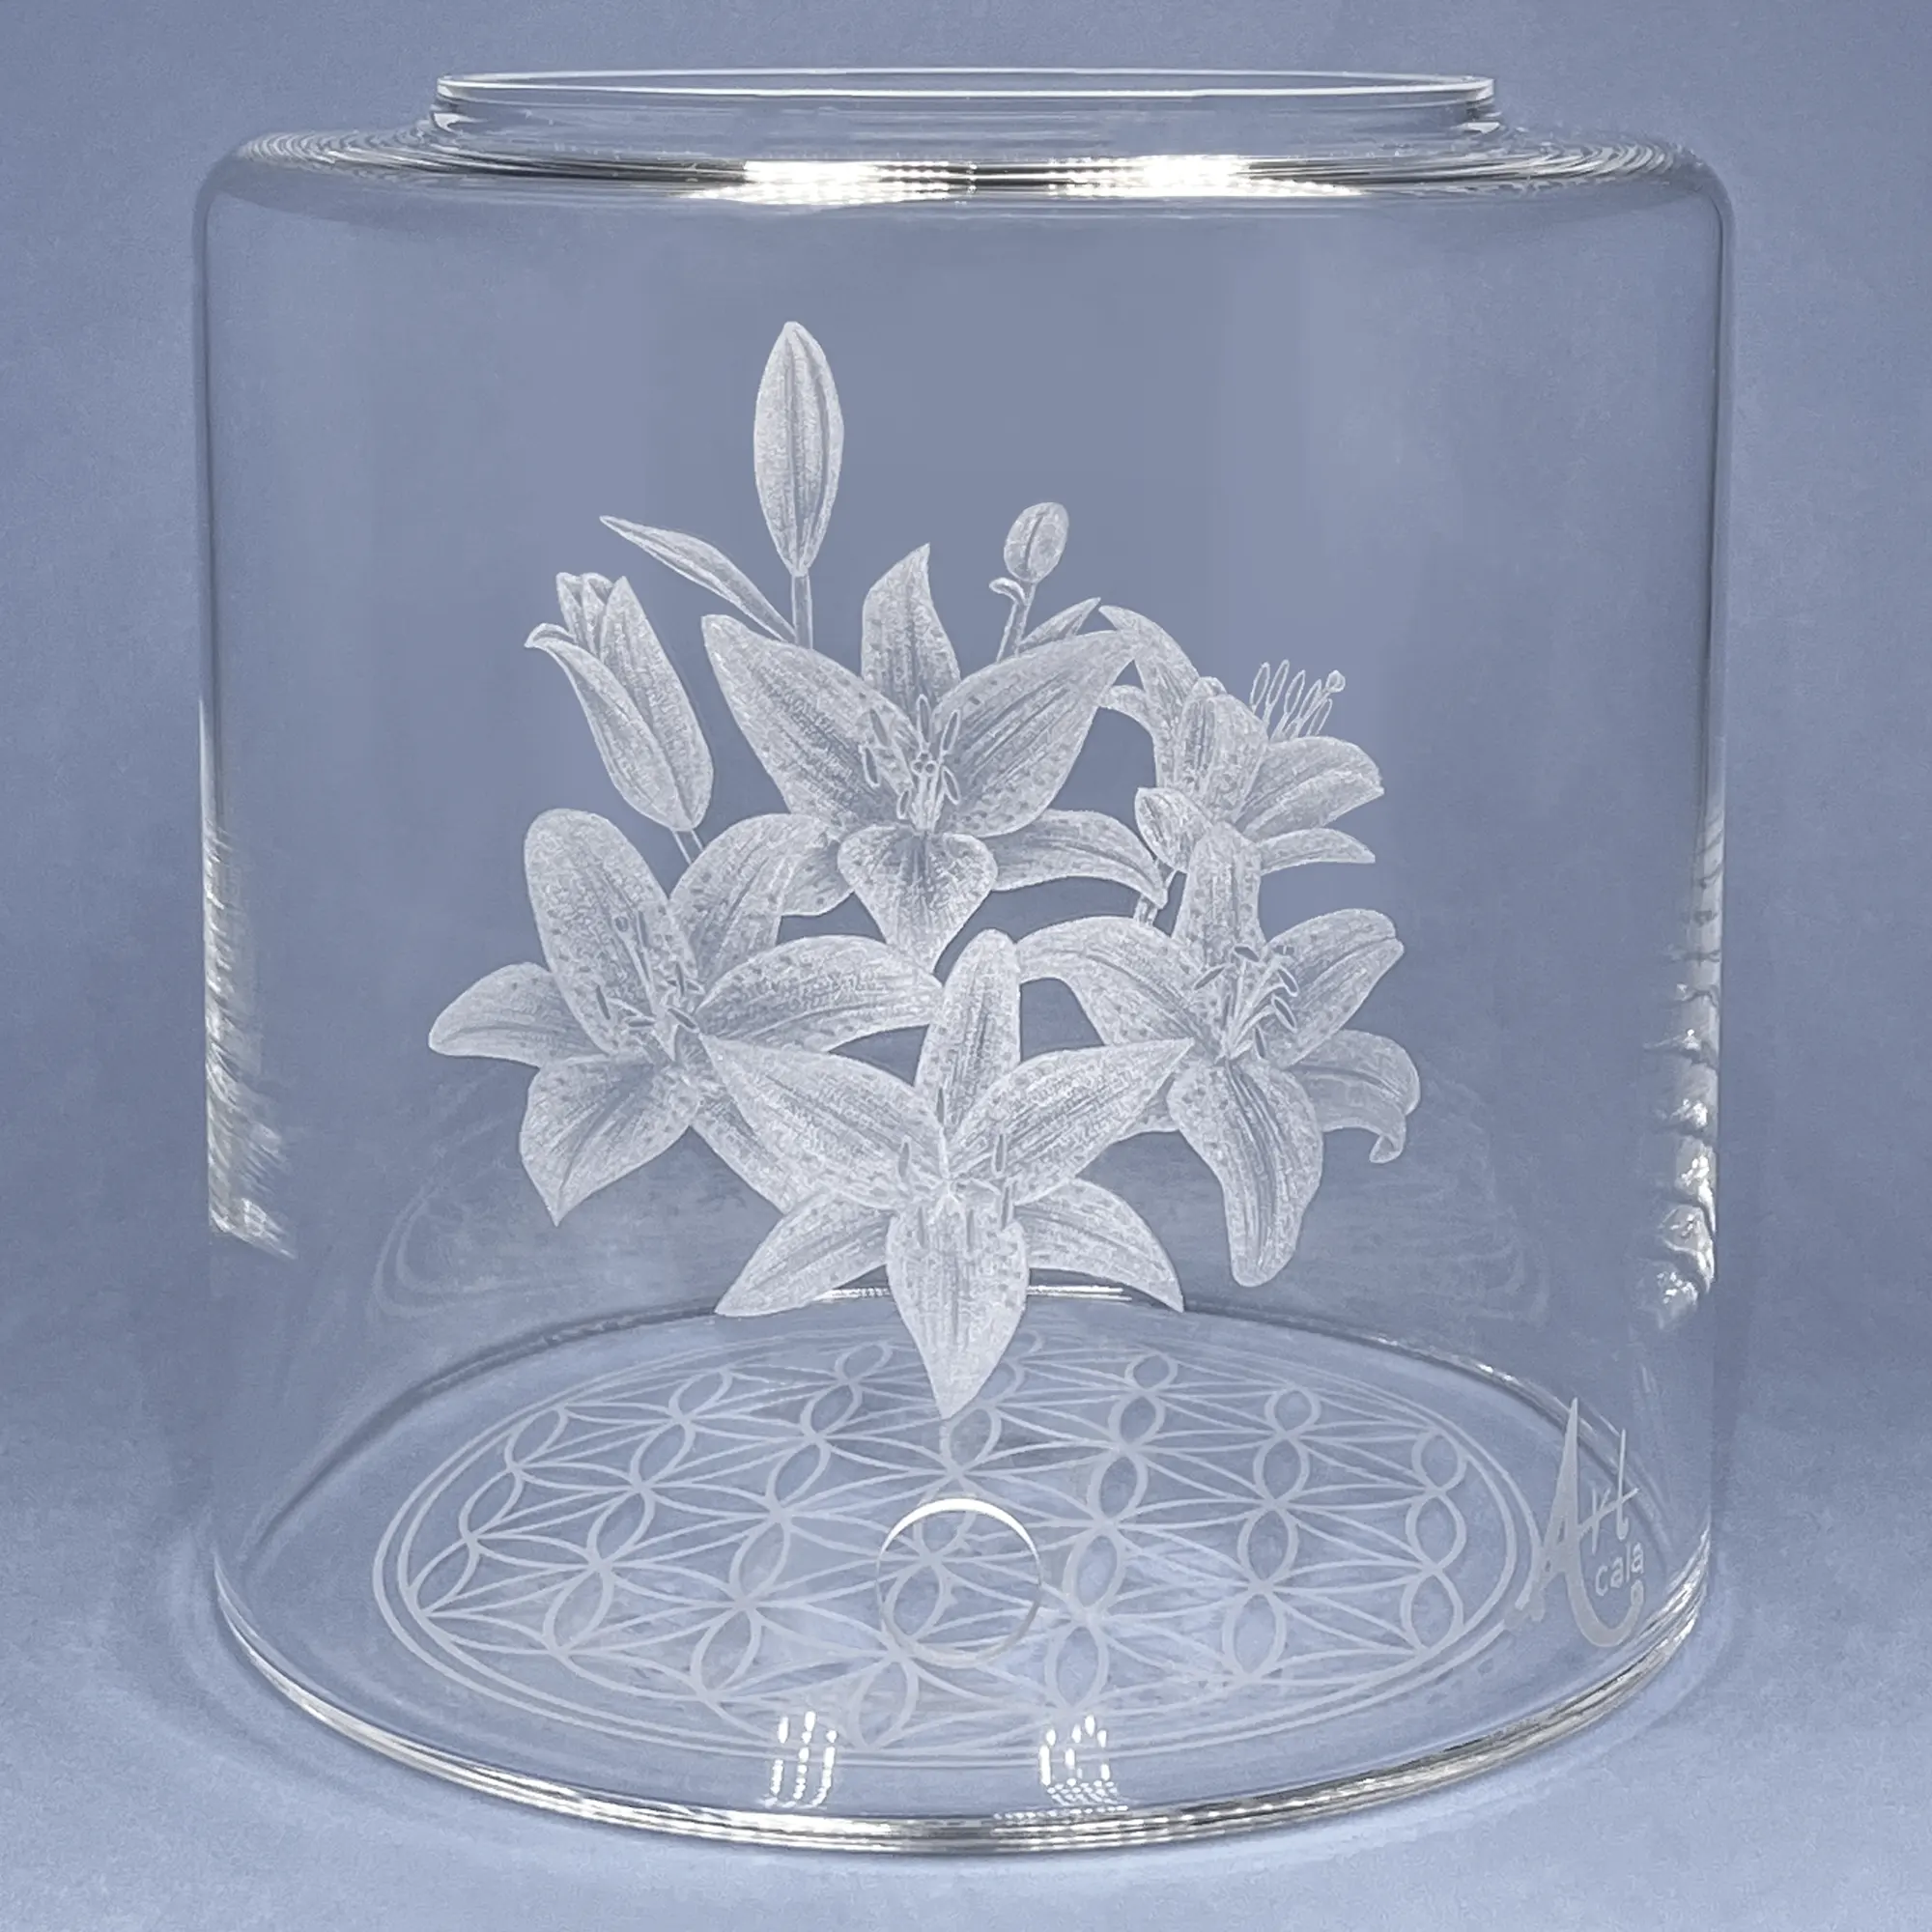 Vorratstank aus Glas für einen Acala 5LWasserfilter in klarem Glas mit gravierten aufgeblühten Lilien.